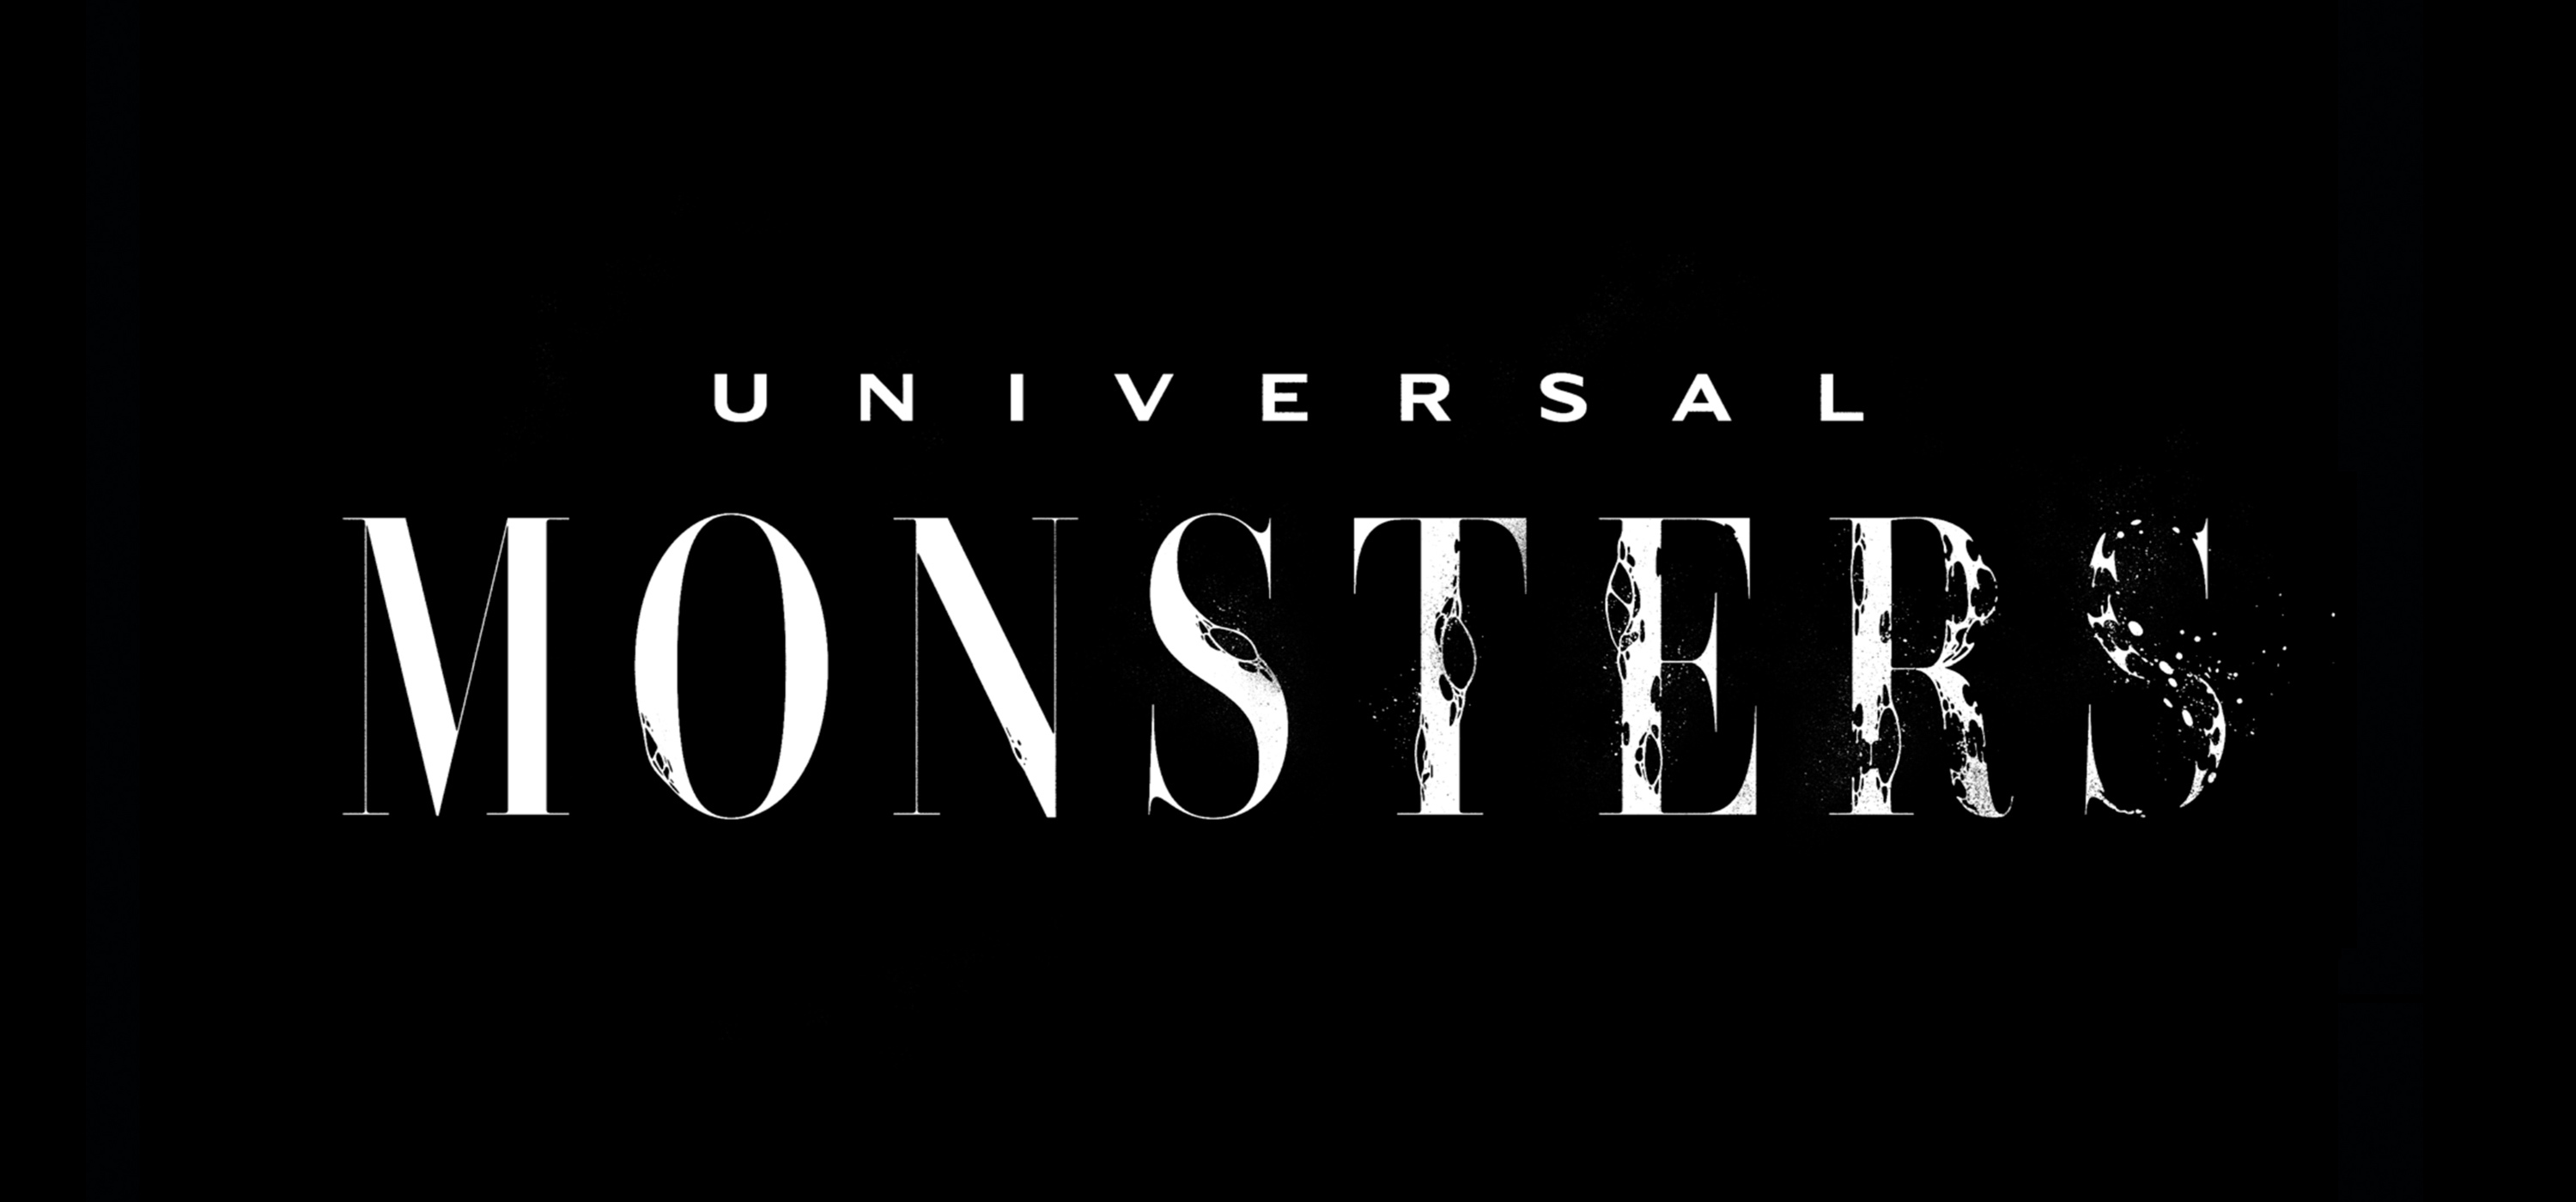 Universal monsters homepage